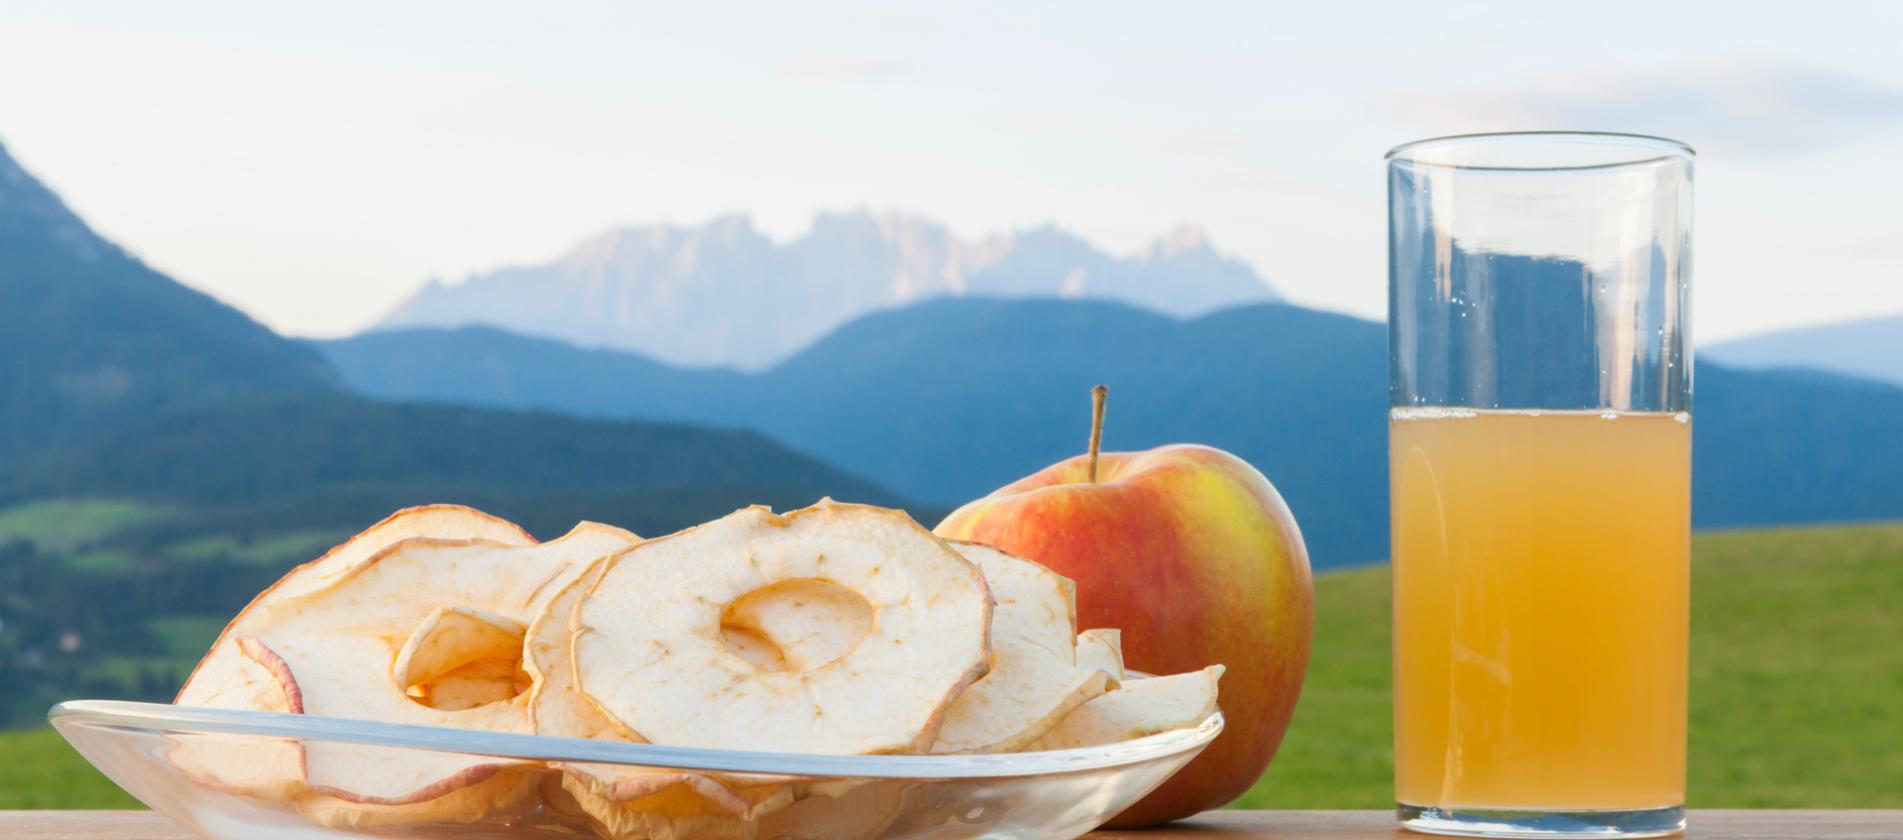 Südtiroler Apfel